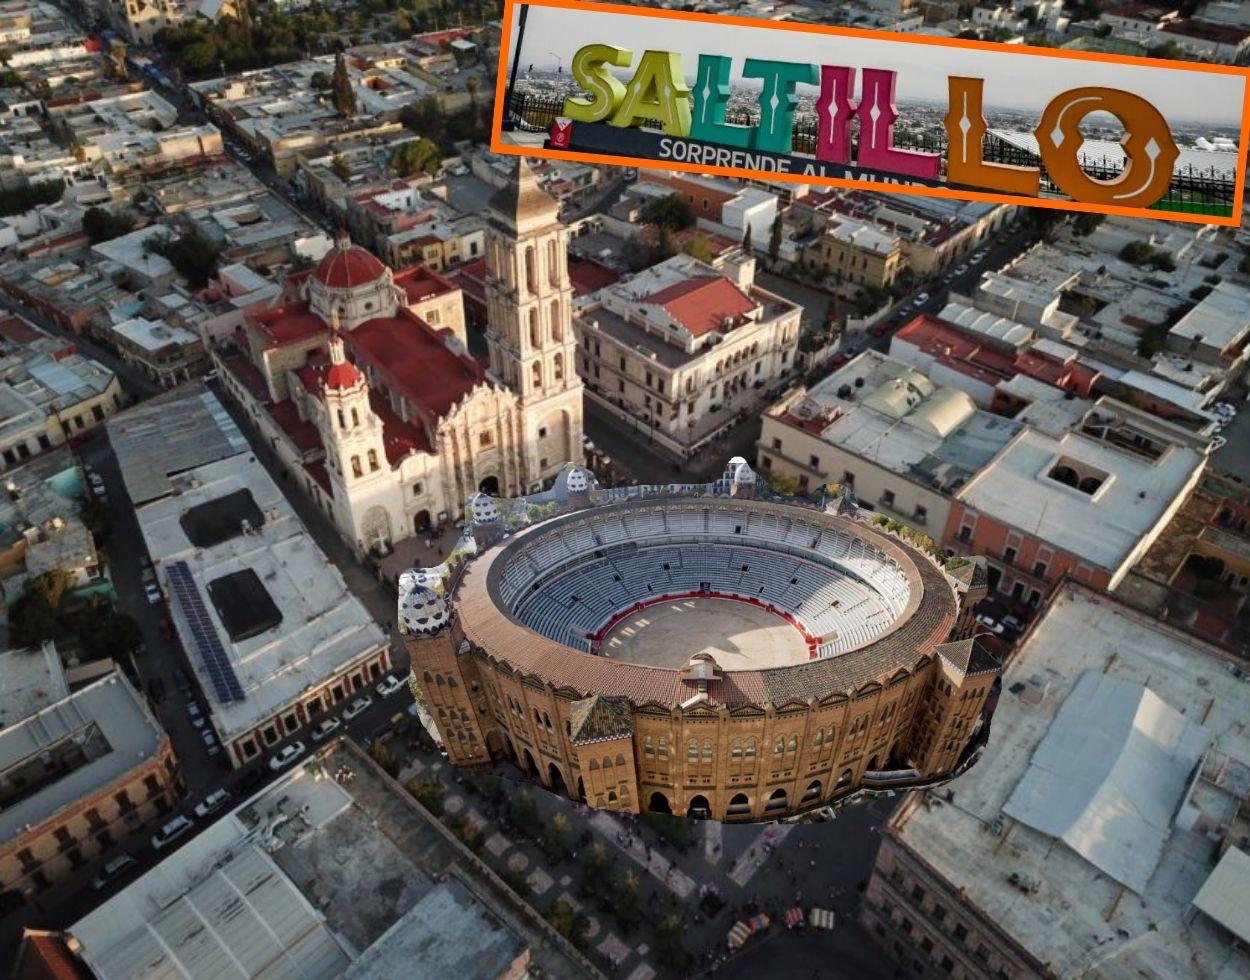 $!Una imagen aérea de una plaza monumental en Saltillo, durante un ejercicio de imaginación en el día de los inocentes. FOTO: VANGUARDIA